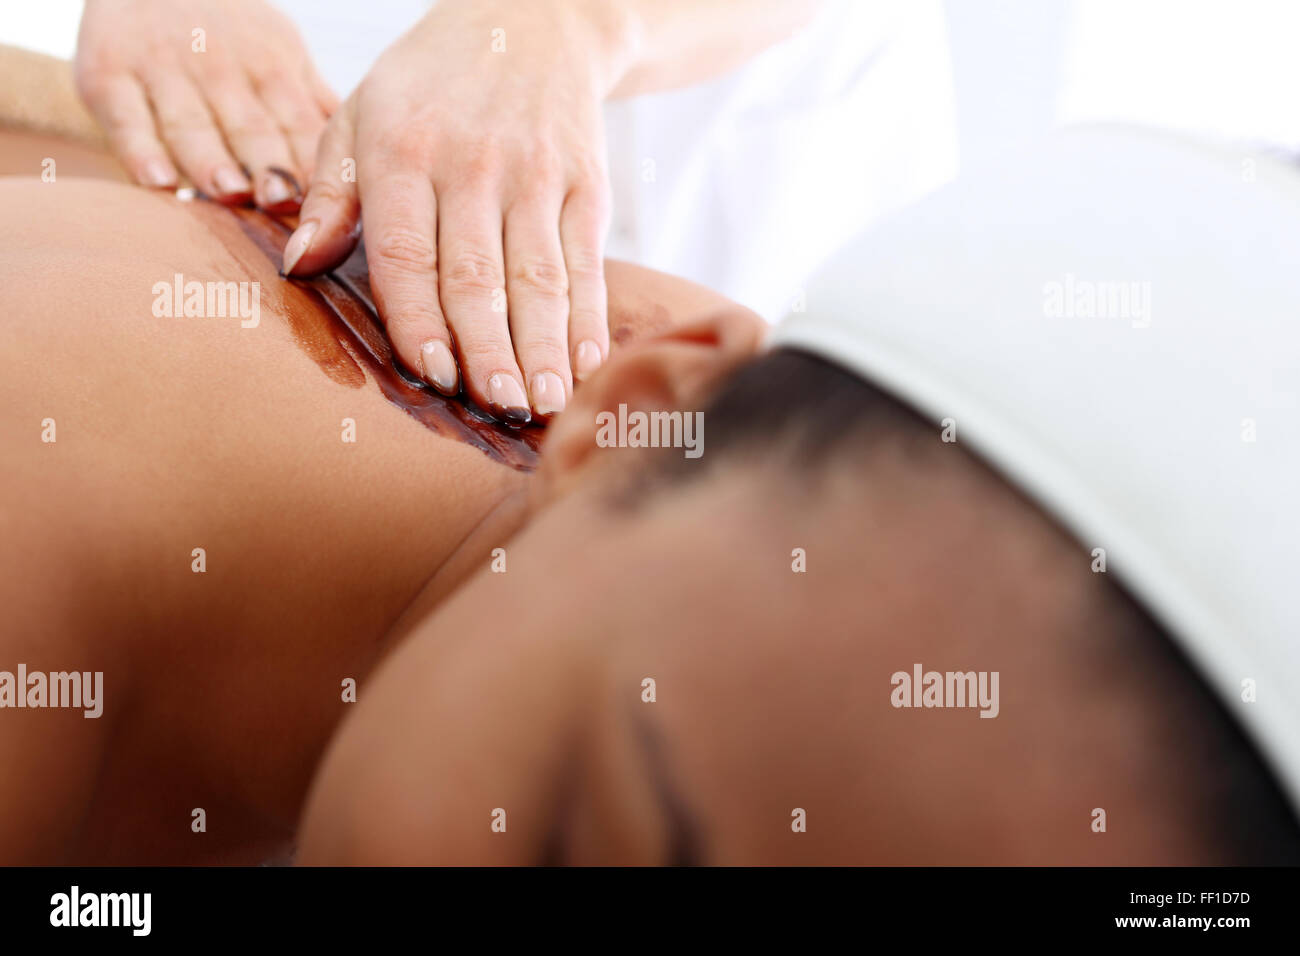 Schokoladen-Massage. Body Massage, Schokoladen-Massage. Pflegende Behandlung, Entspannung, feuchtigkeitsspendend, straffend Stockfoto